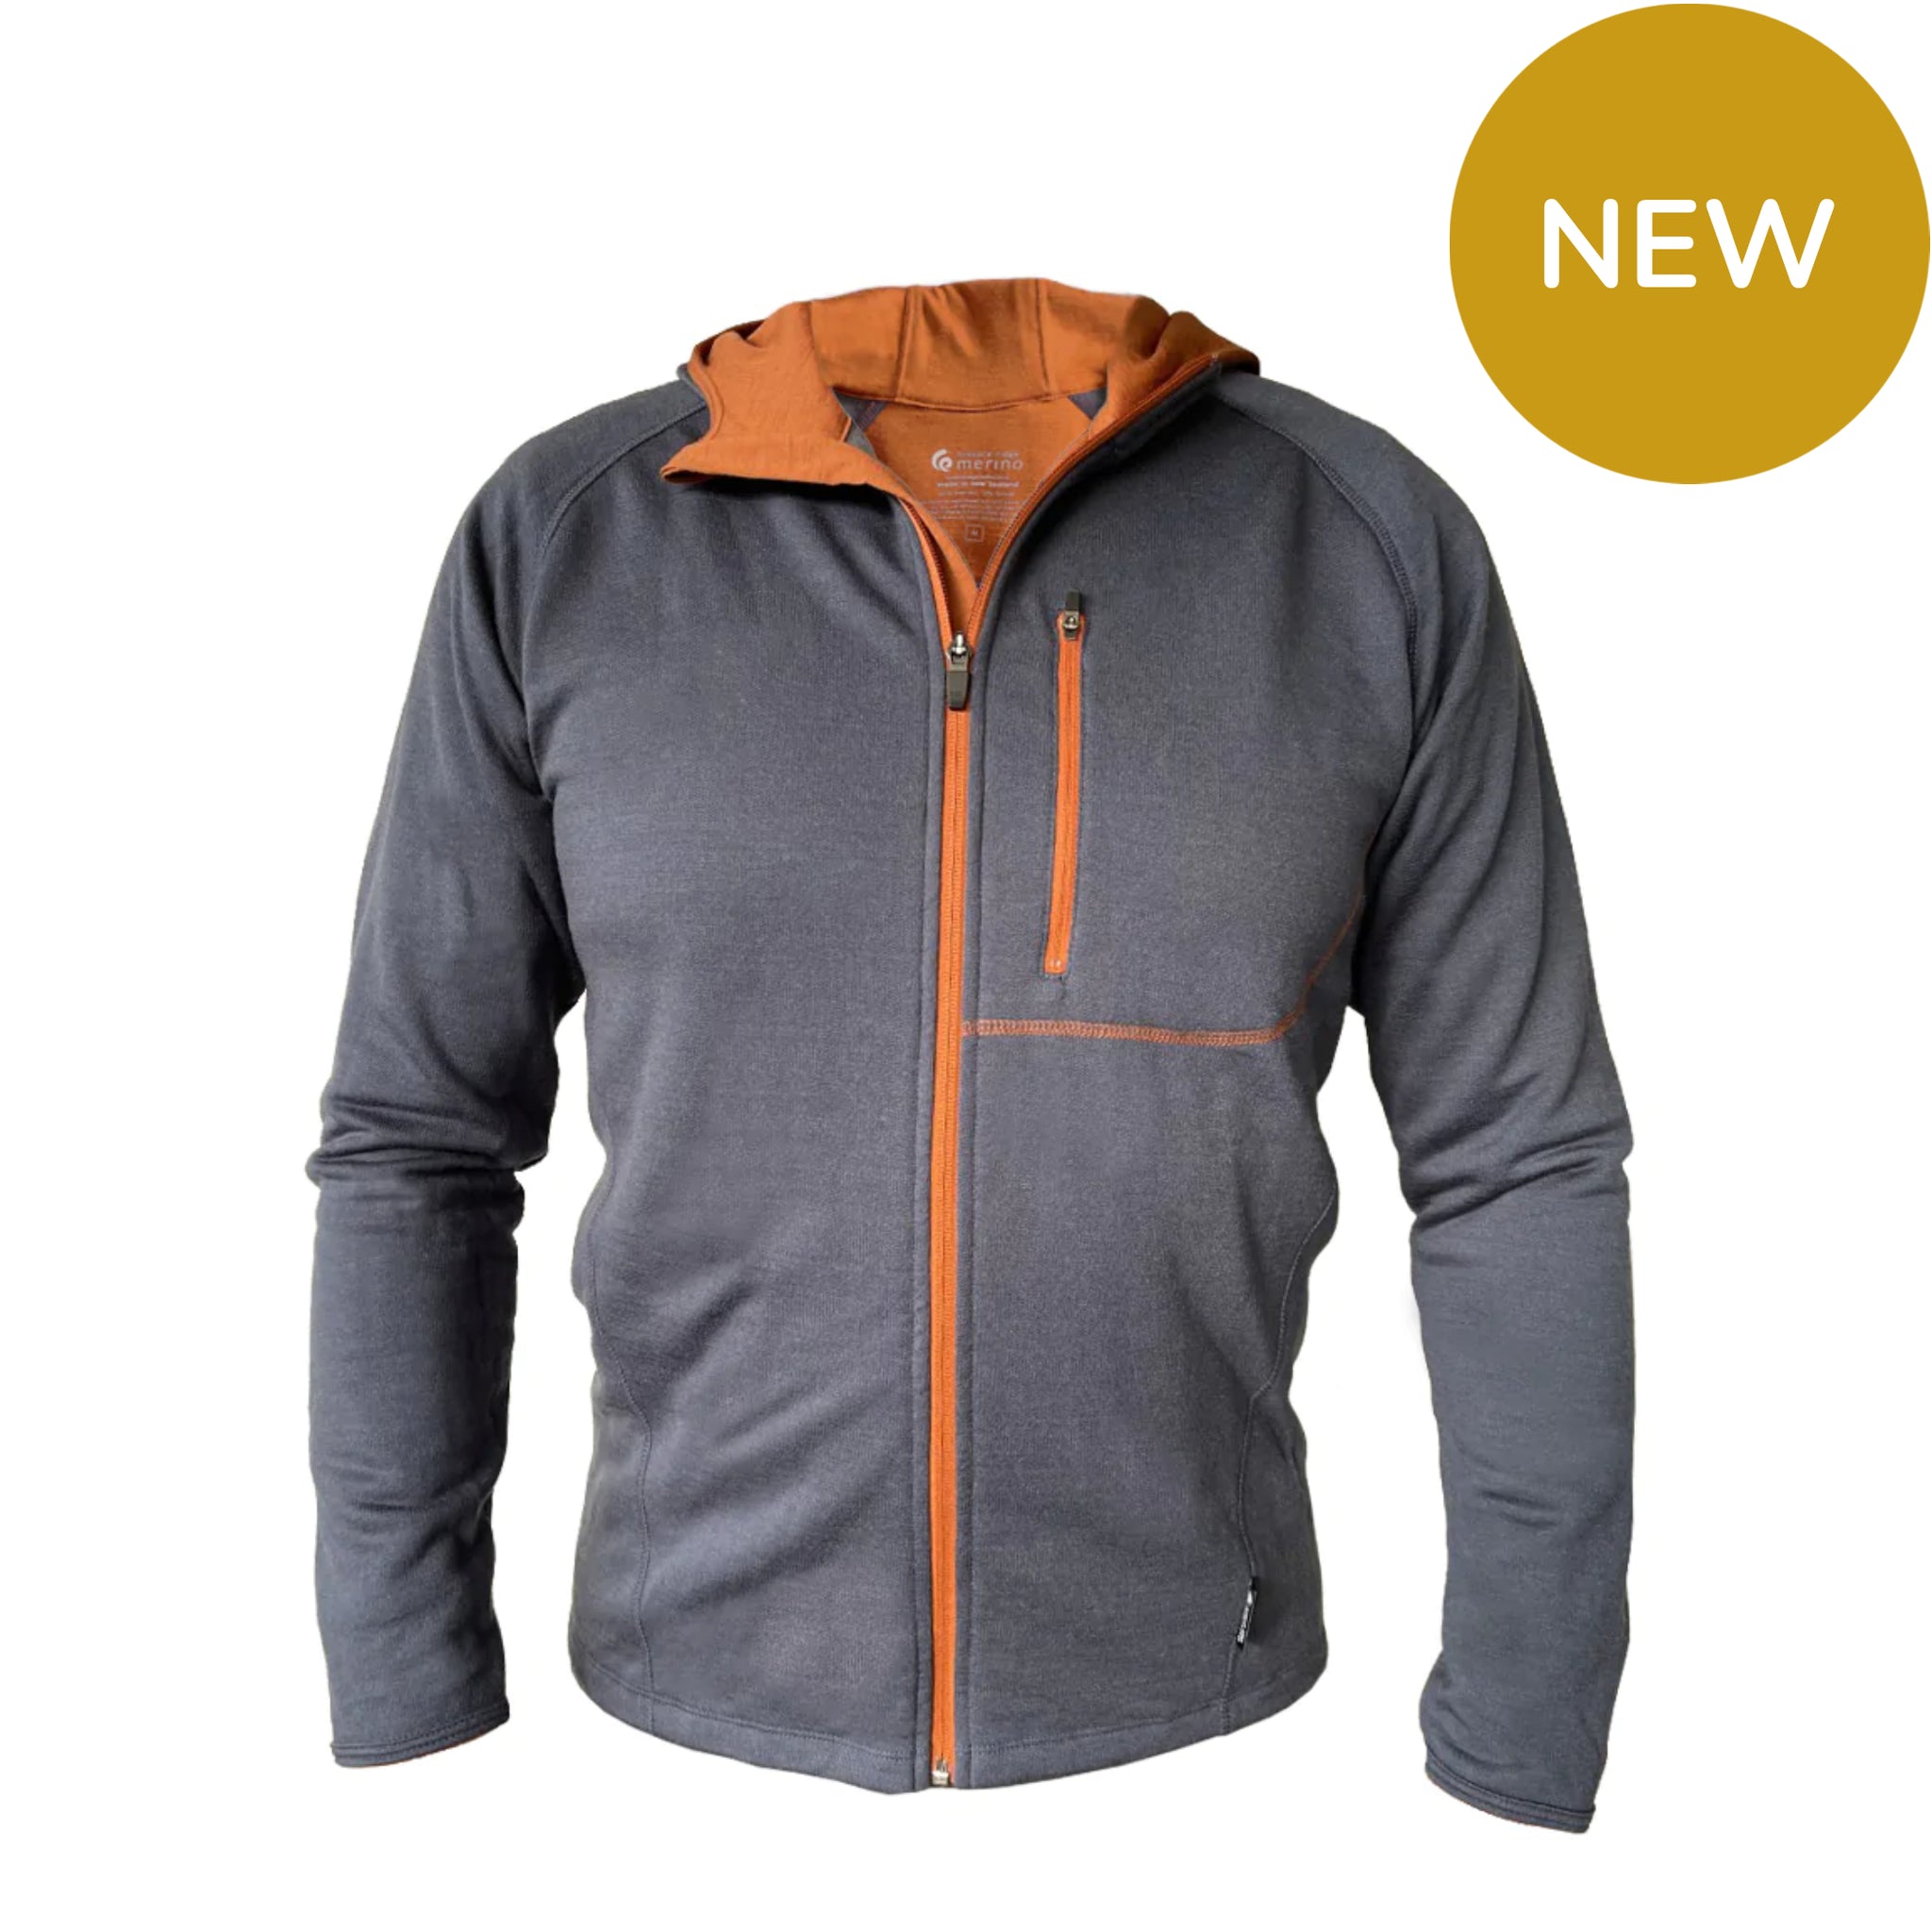 Merino/Tencel Men's Full Zip Jacket with Hood. Made in New Zealand.